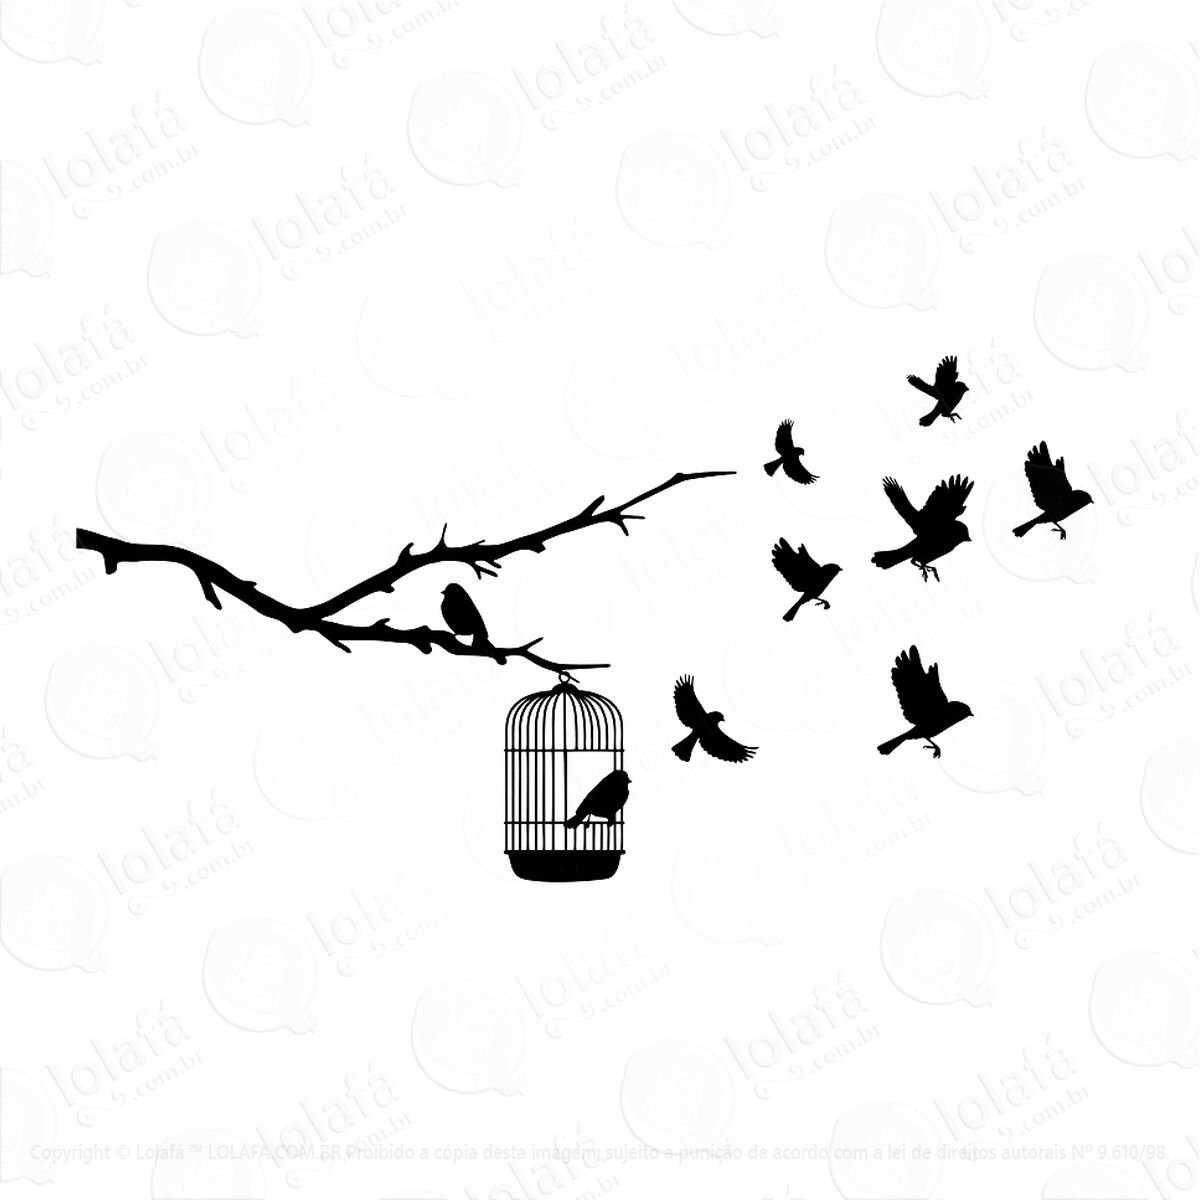 adesivo de parede pássaros voando fora da gaiola decorativo mod:346